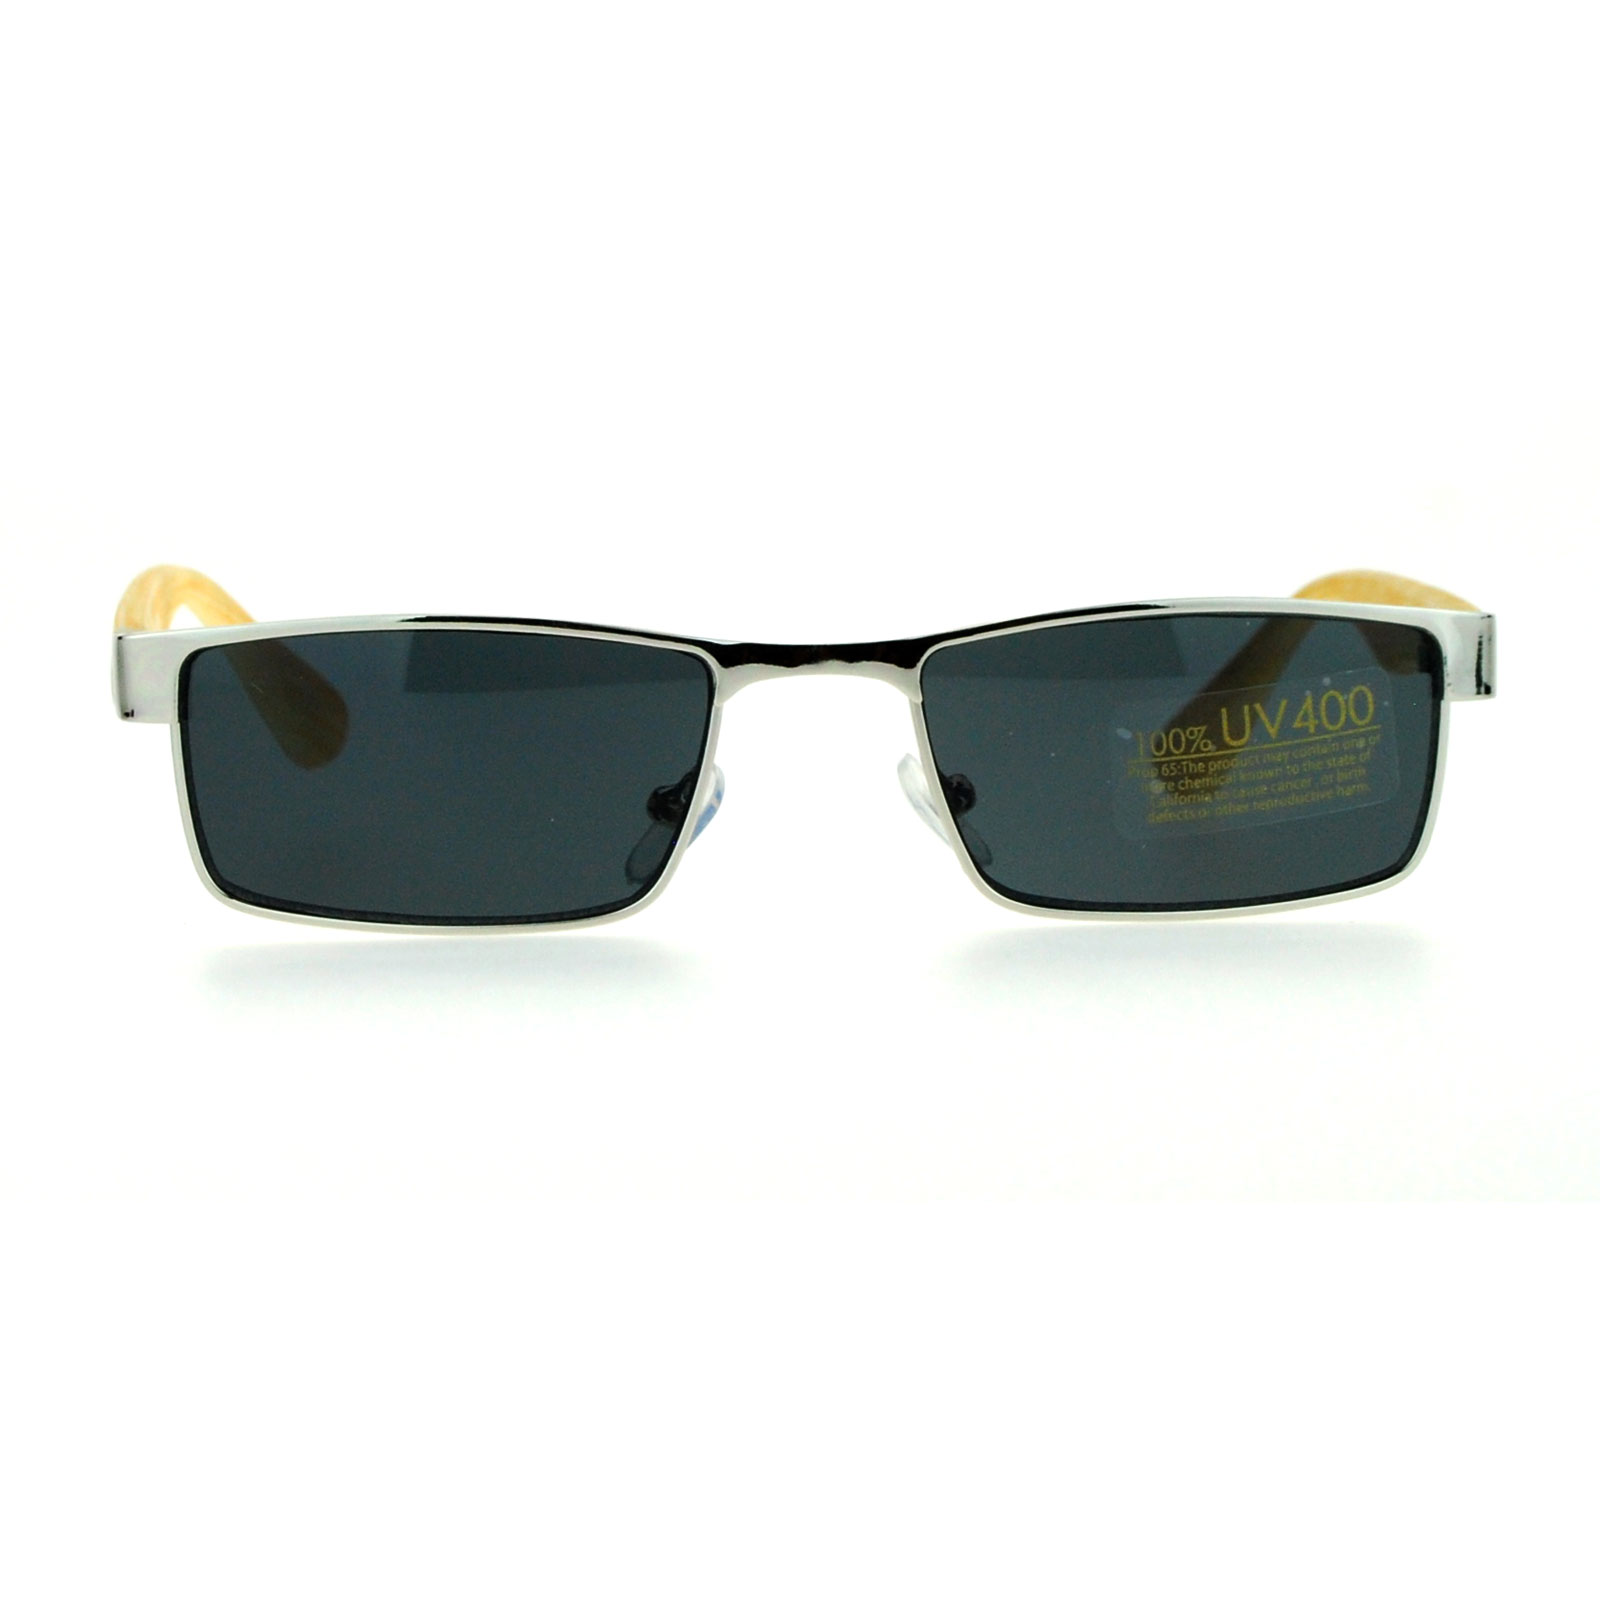 Sa106 Mens Minimal Narrow Rectangular Metal Rim Wood Grain Arm Sunglasses Ebay